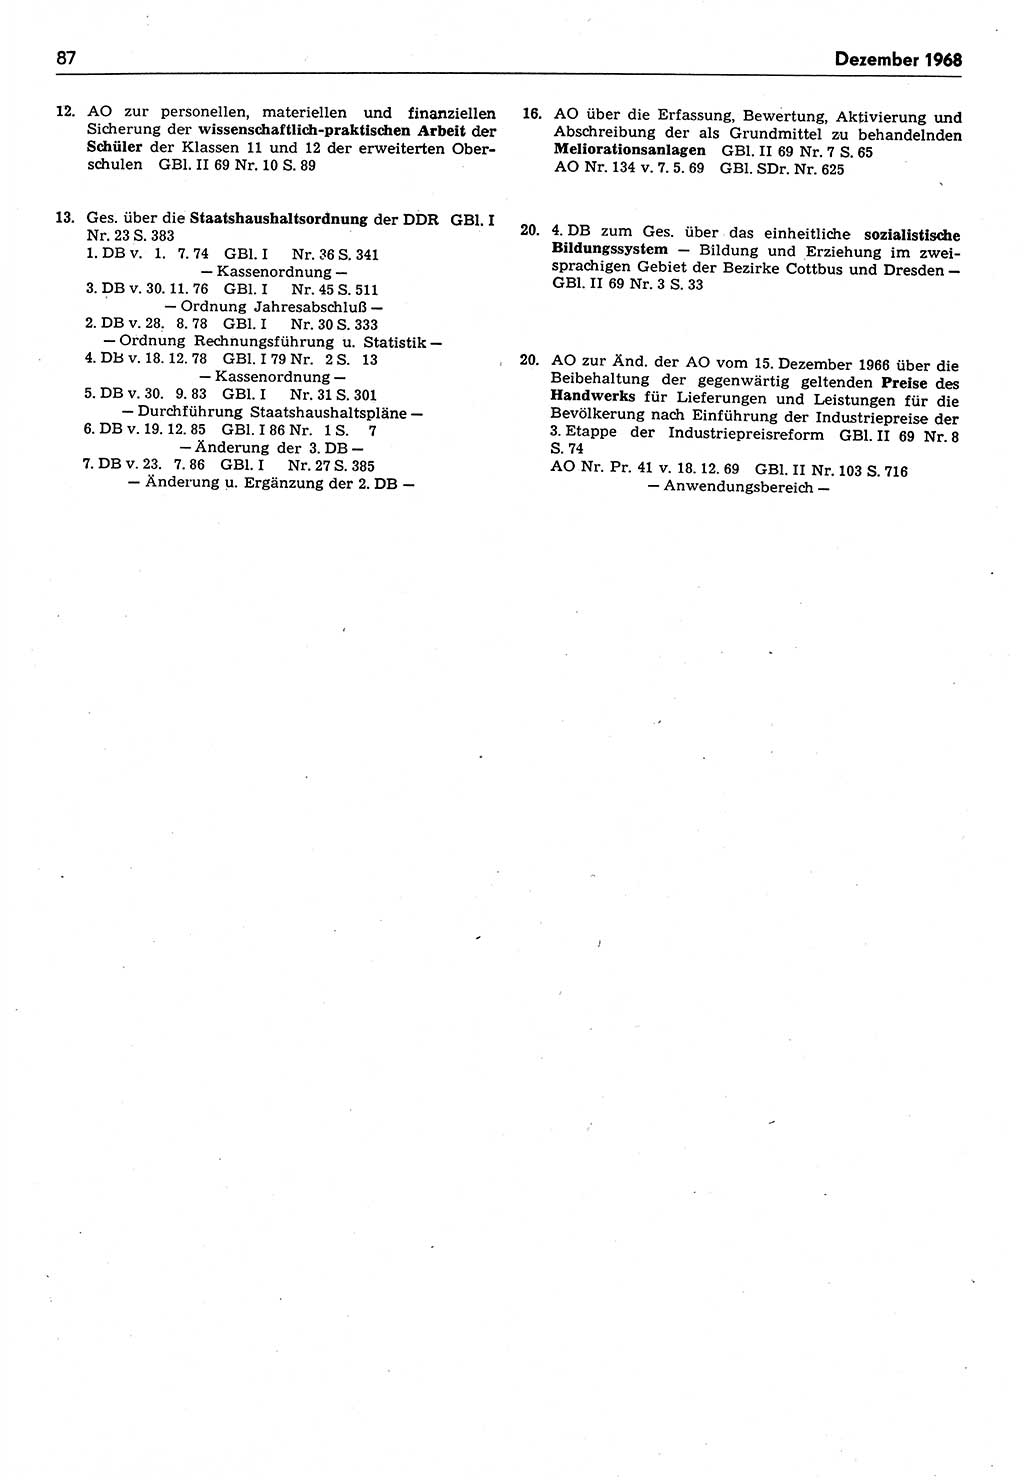 Das geltende Recht der Deutschen Demokratischen Republik (DDR) 1949-1988, Seite 87 (Gelt. R. DDR 1949-1988, S. 87)